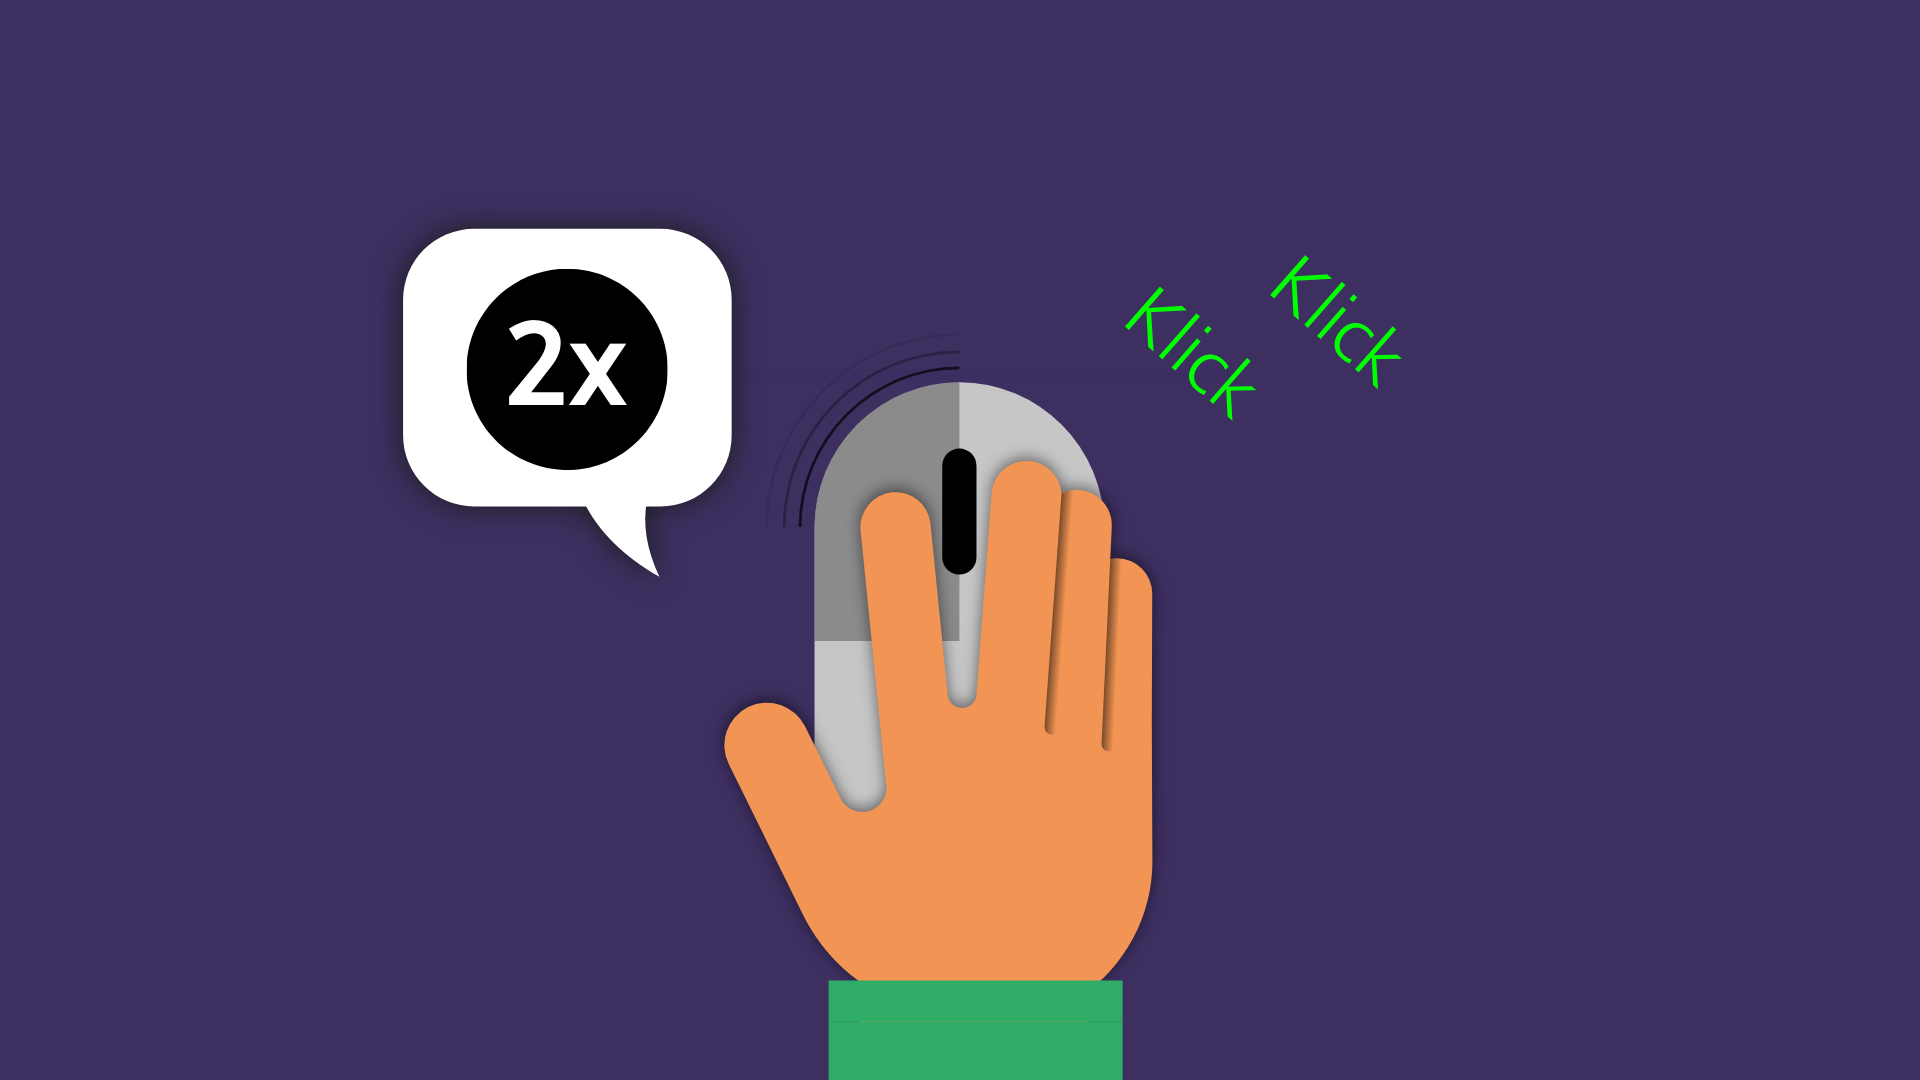 Eine Hand liegt auf einer Maus. Der Zeigefinger klickt die linken Maustaste. Daneben steht zweimal Klick, Klick und eine Sprechblase mit 2x.